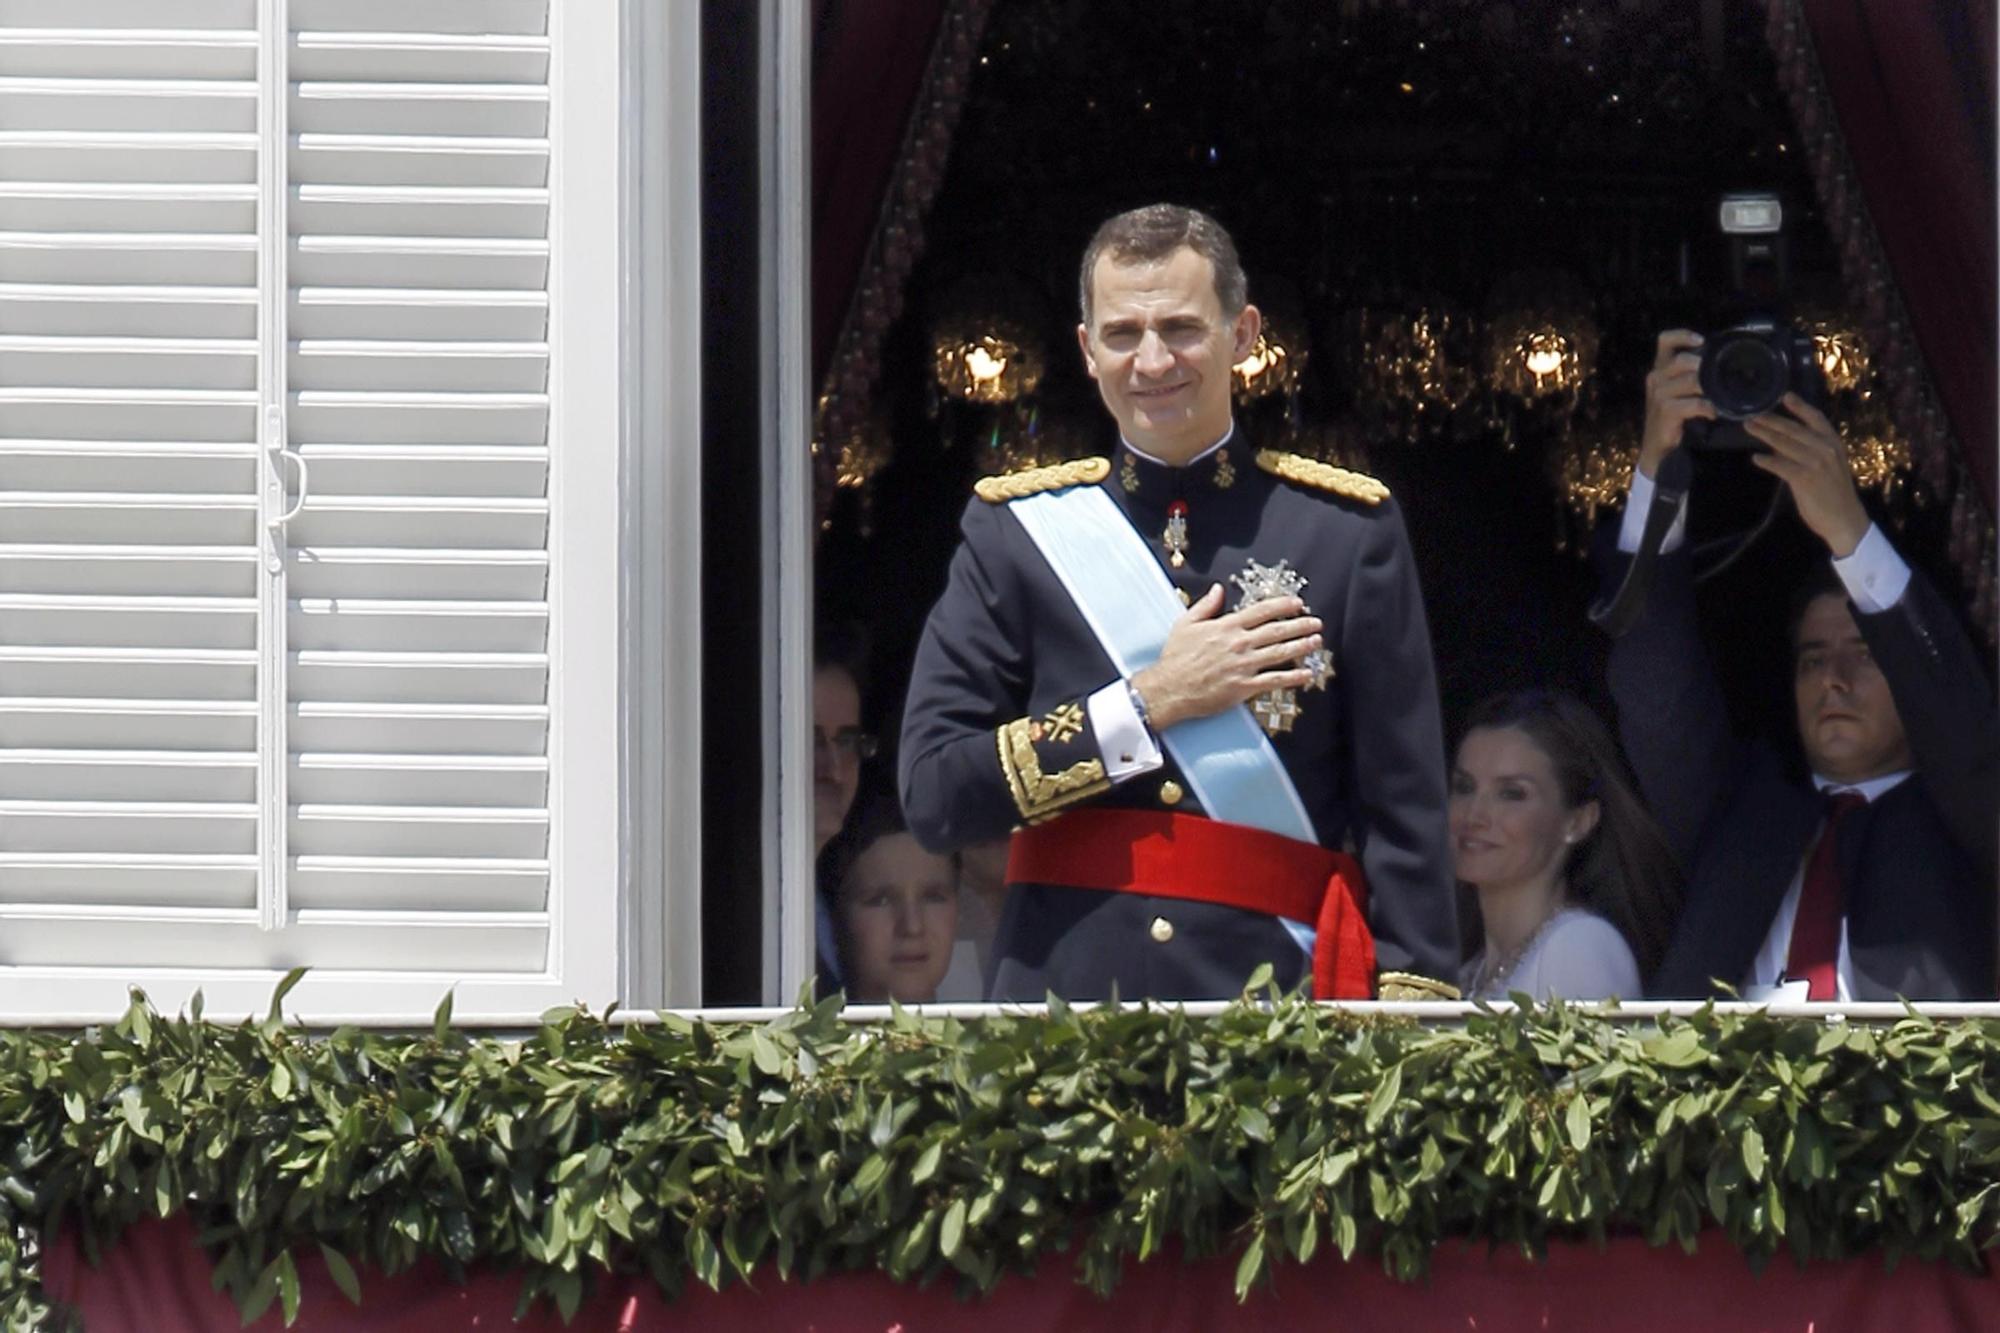 El rey Felipe VI en el balcón del Palacio Real en el marco de la celebración de su investidura en junio de 2014